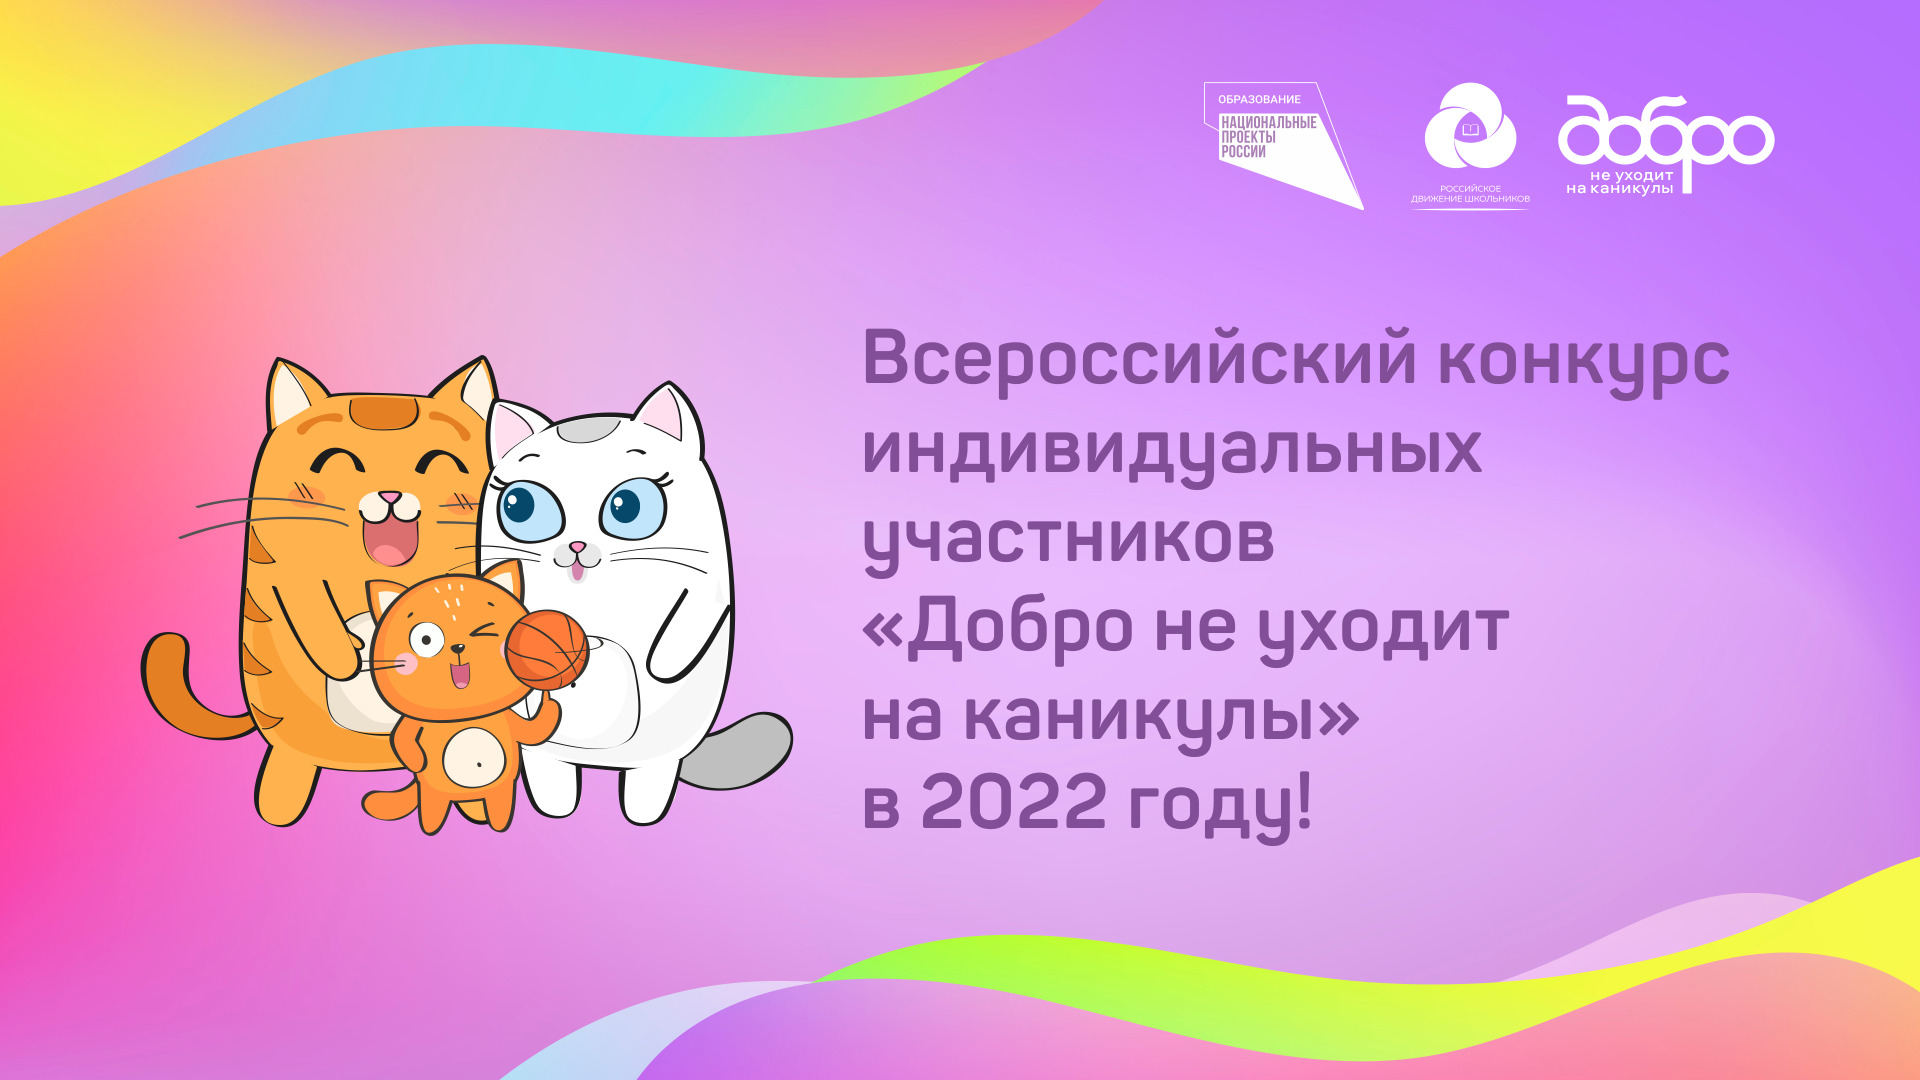 Всероссийский конкурс «Российская организация высокой социальной эффективности»